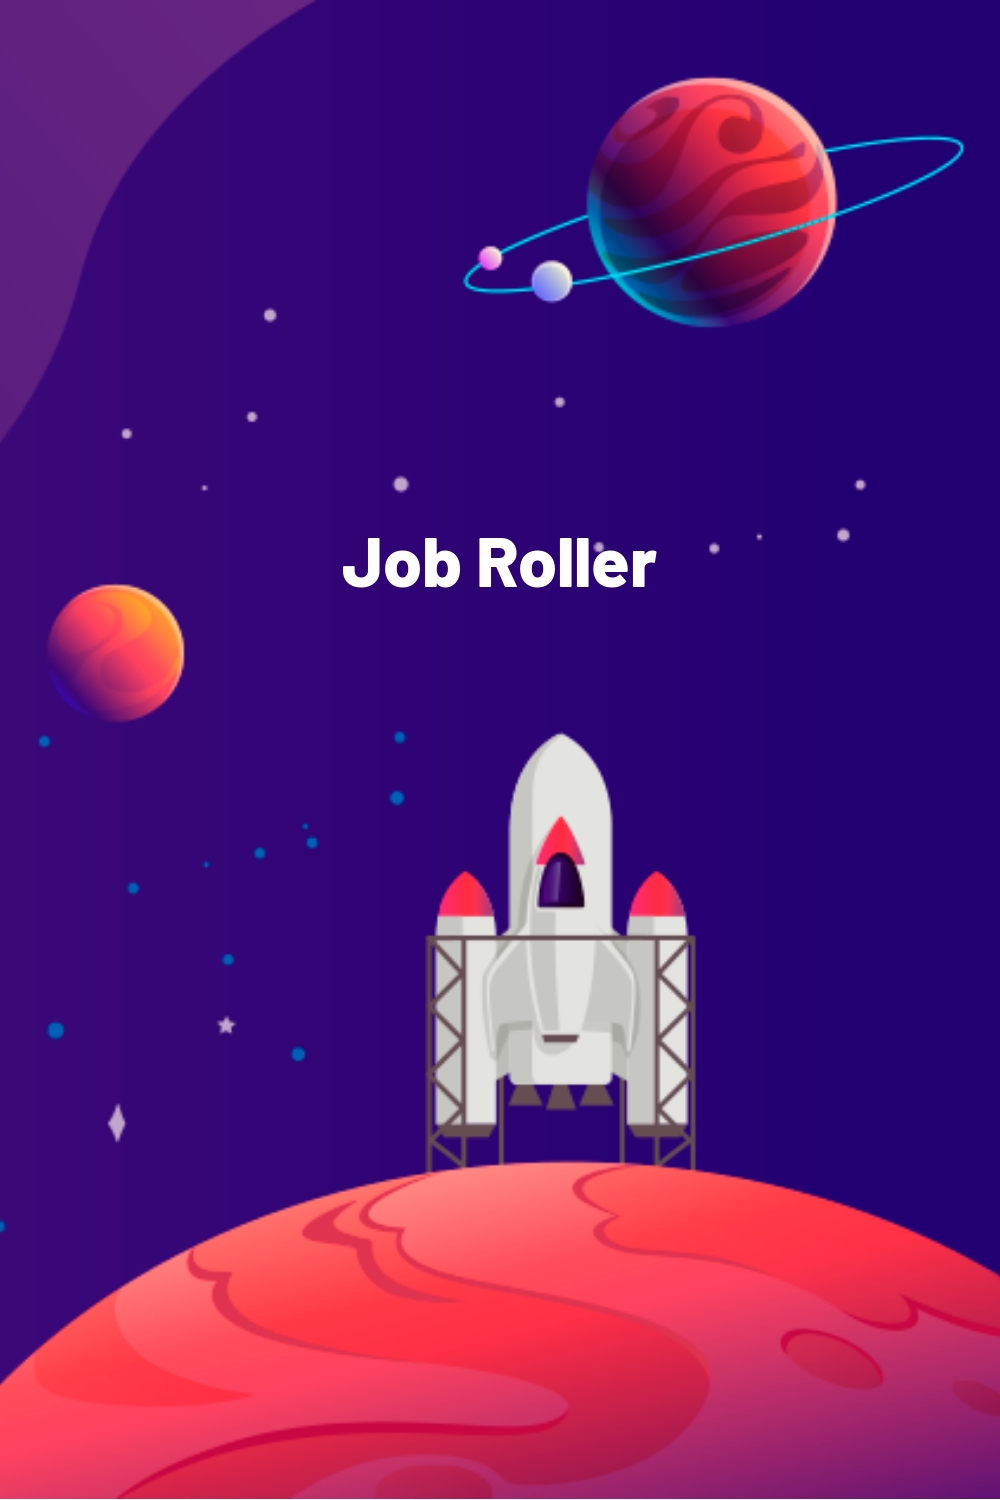 Job Roller